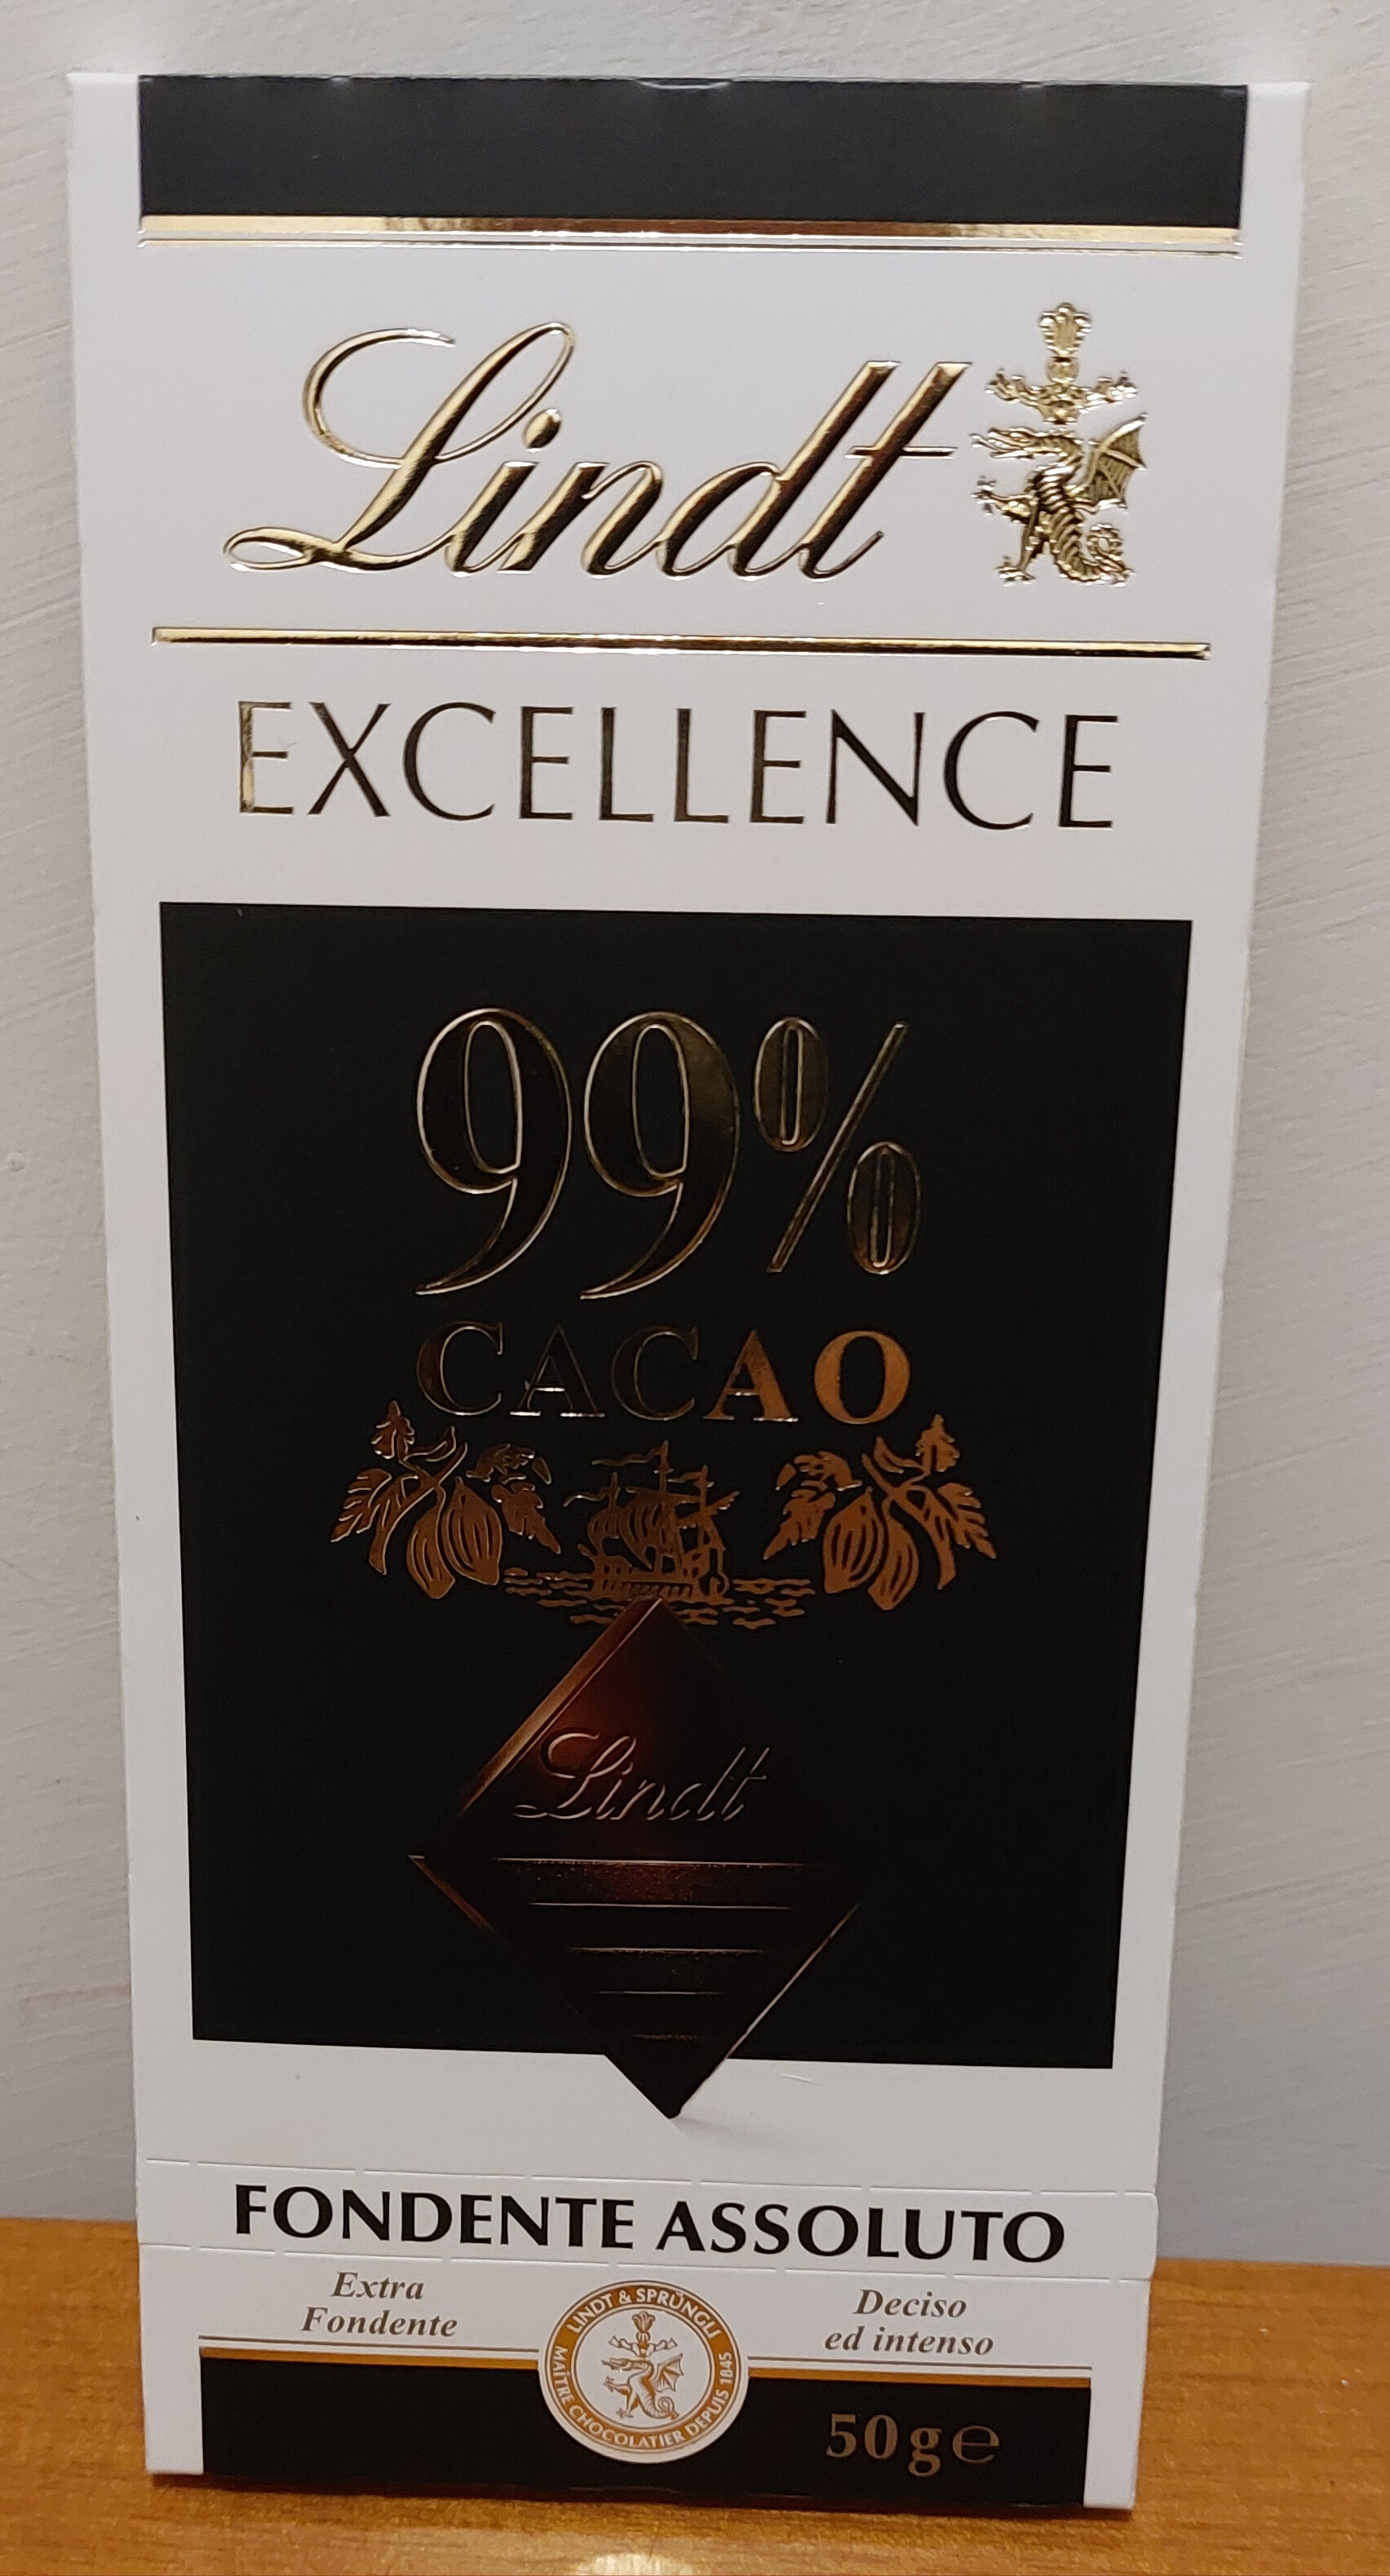 Noir absolu 99% cacao - Prodotto